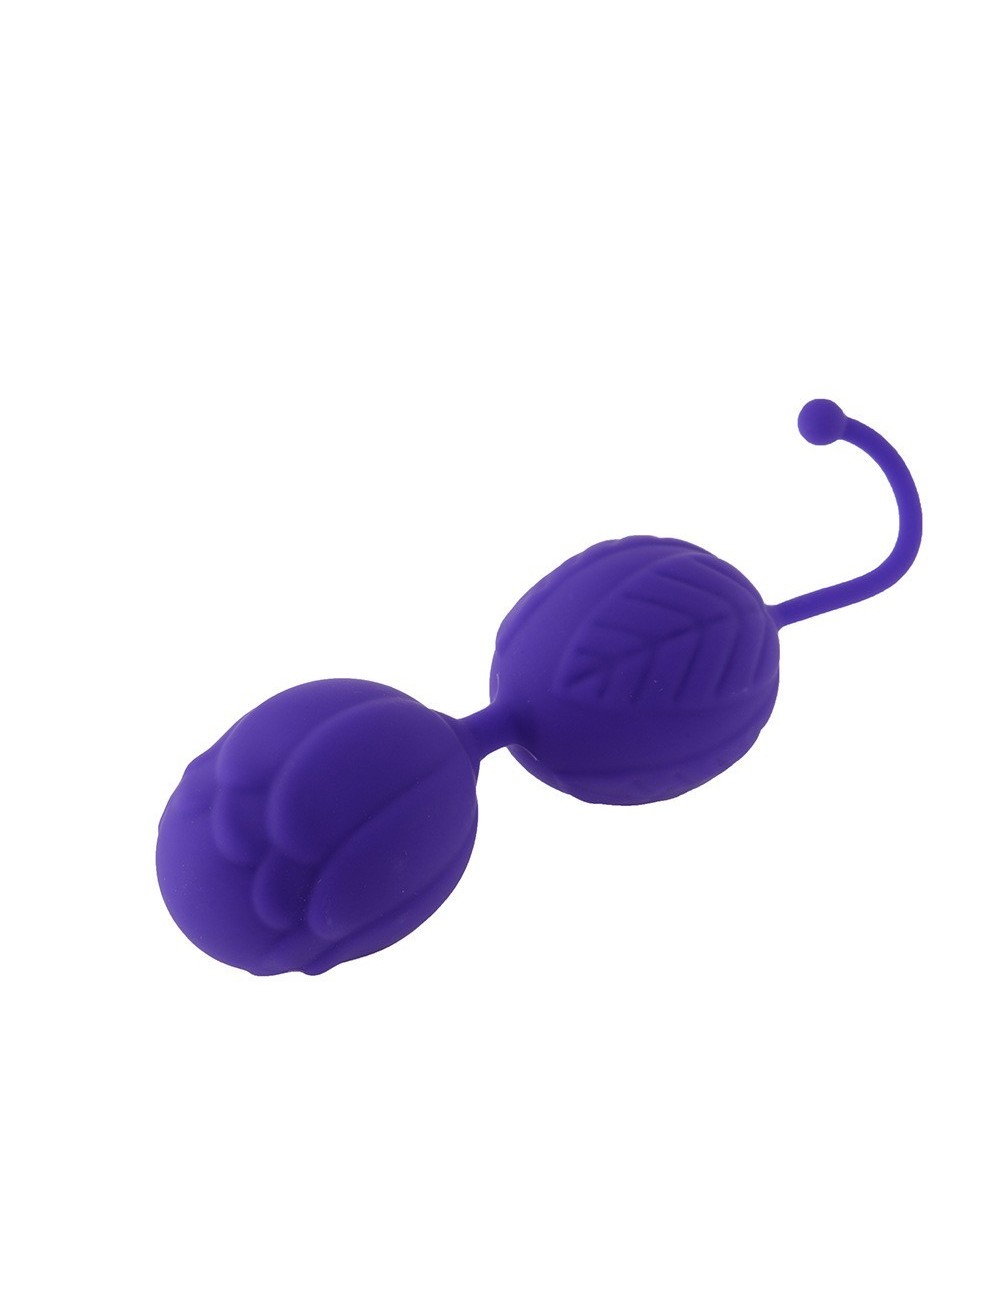 Sextoys - Boules de Geisha - Boules de Geisha violet en silicone très douce - KOB004PUR - Dreamy Toys